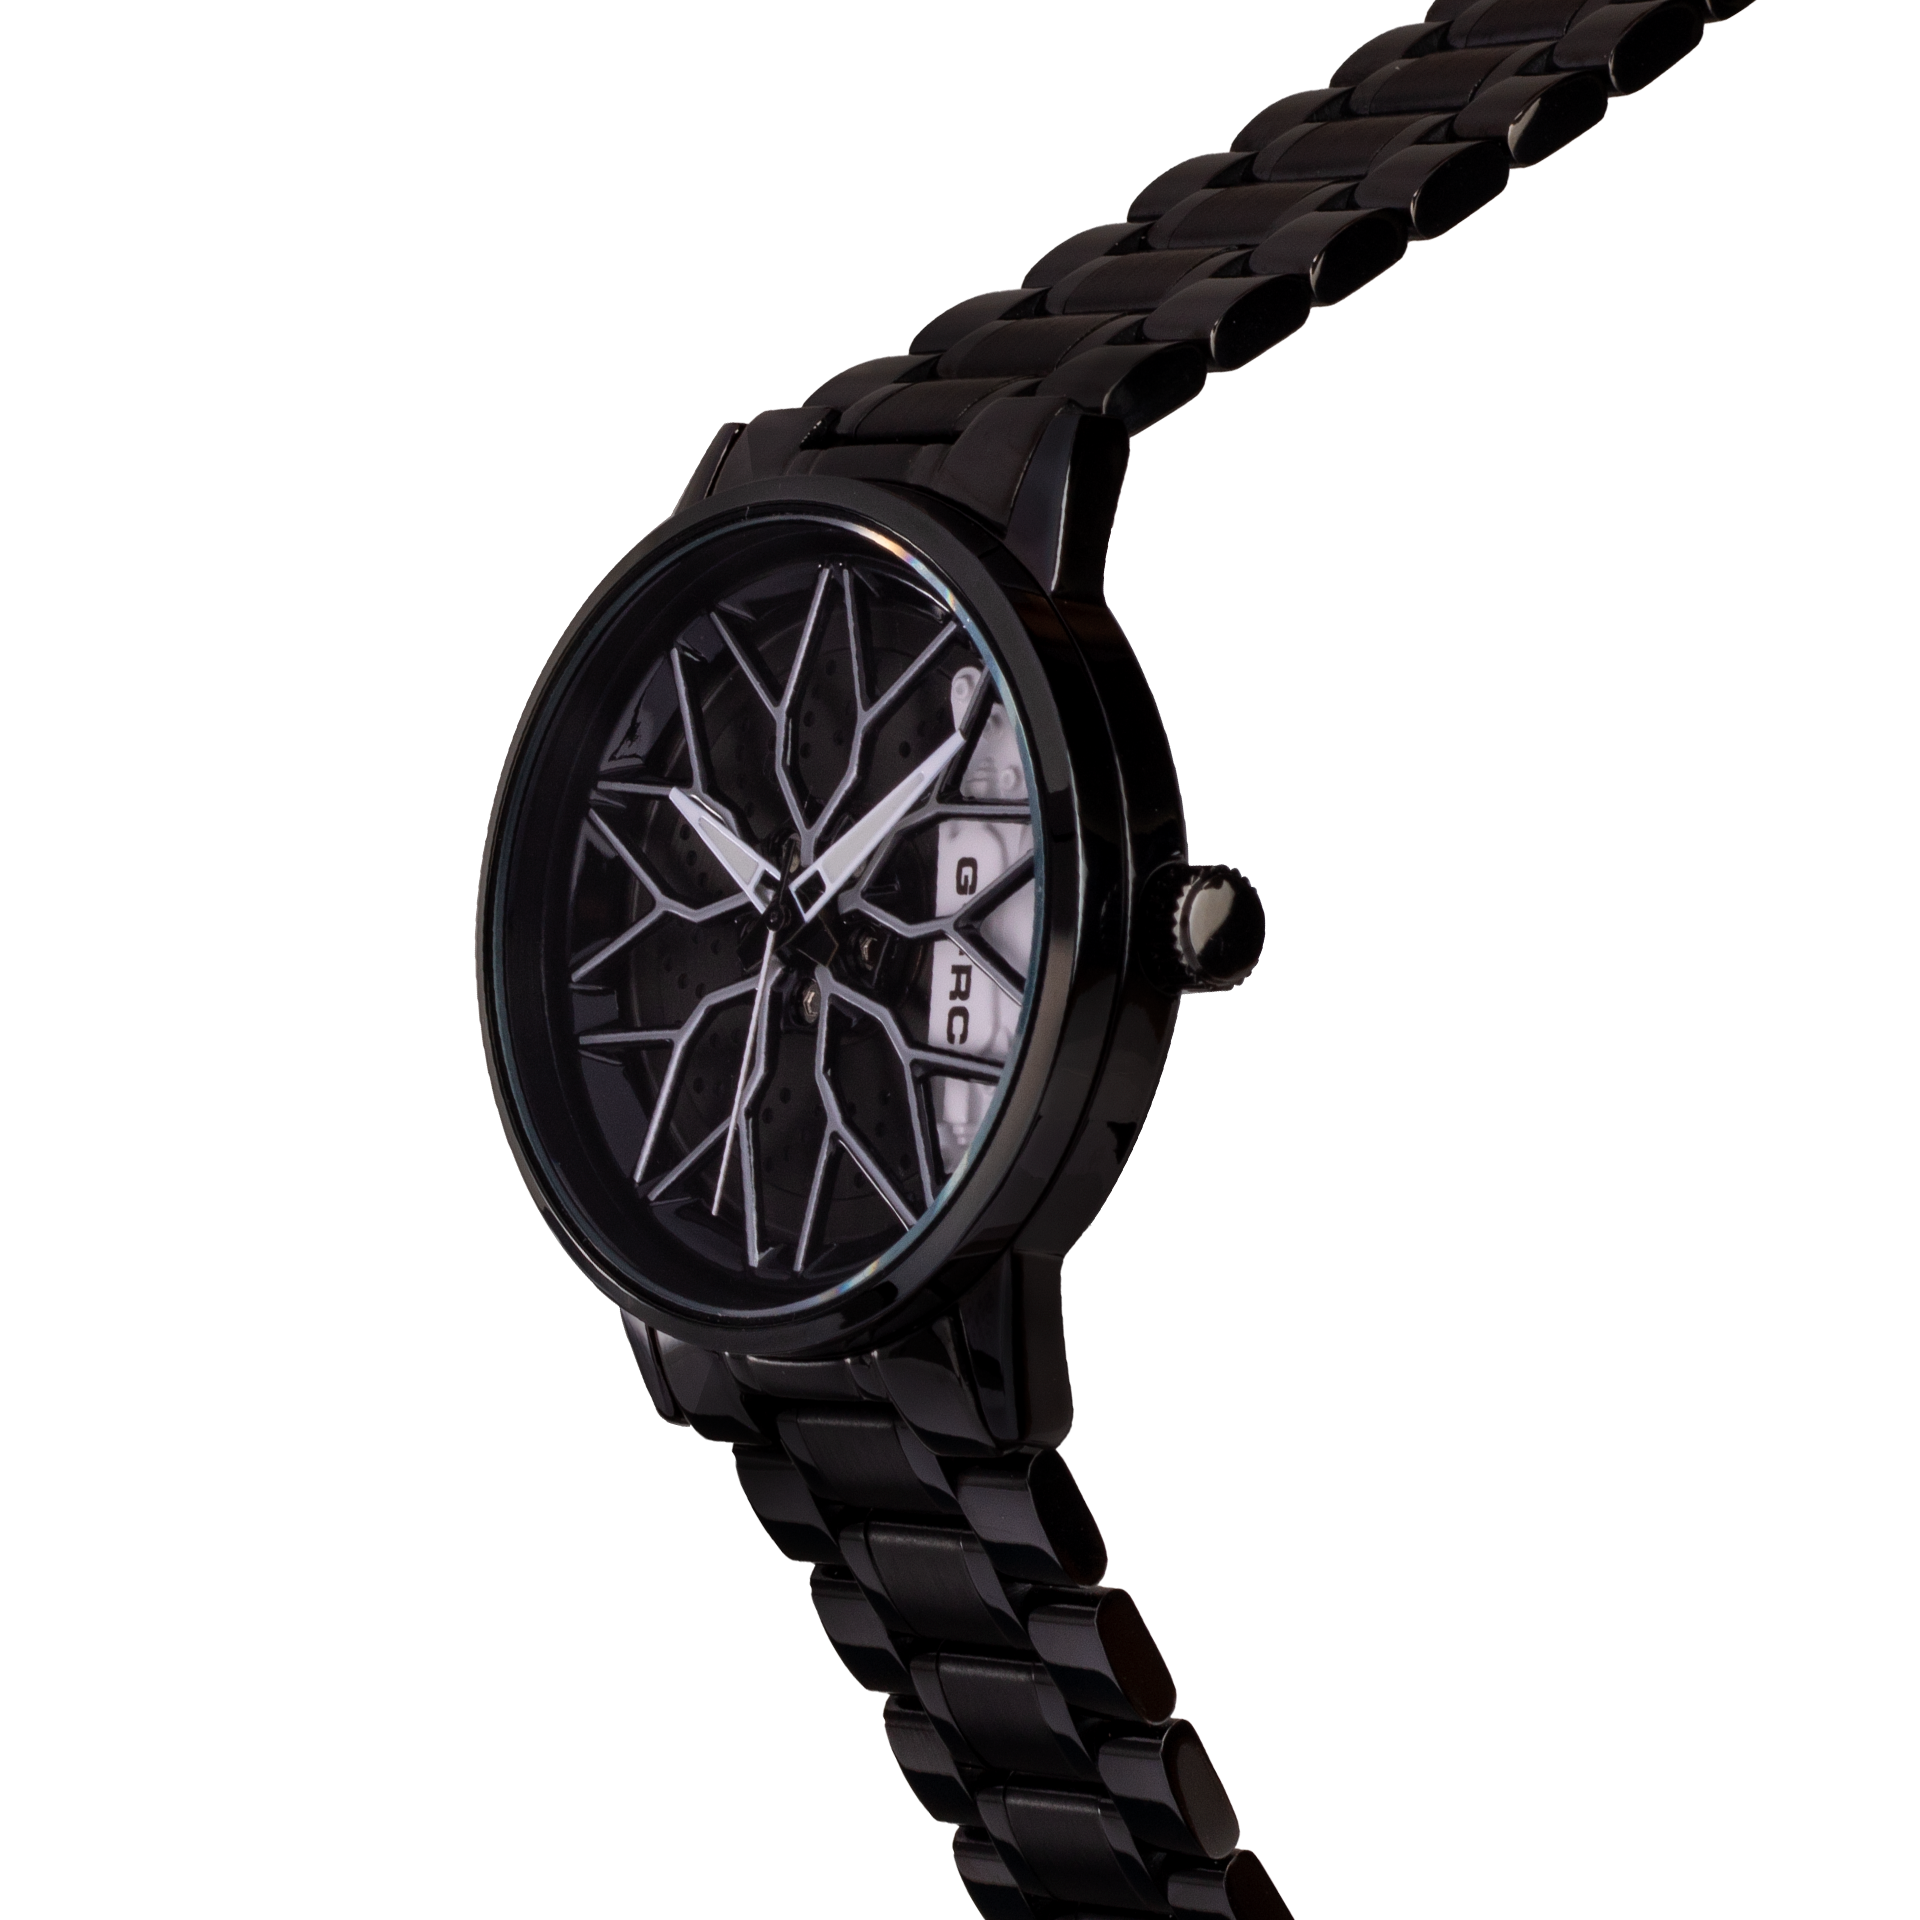 Reloj G-FORCE G1990 análogo con diseño de Rin para hombre